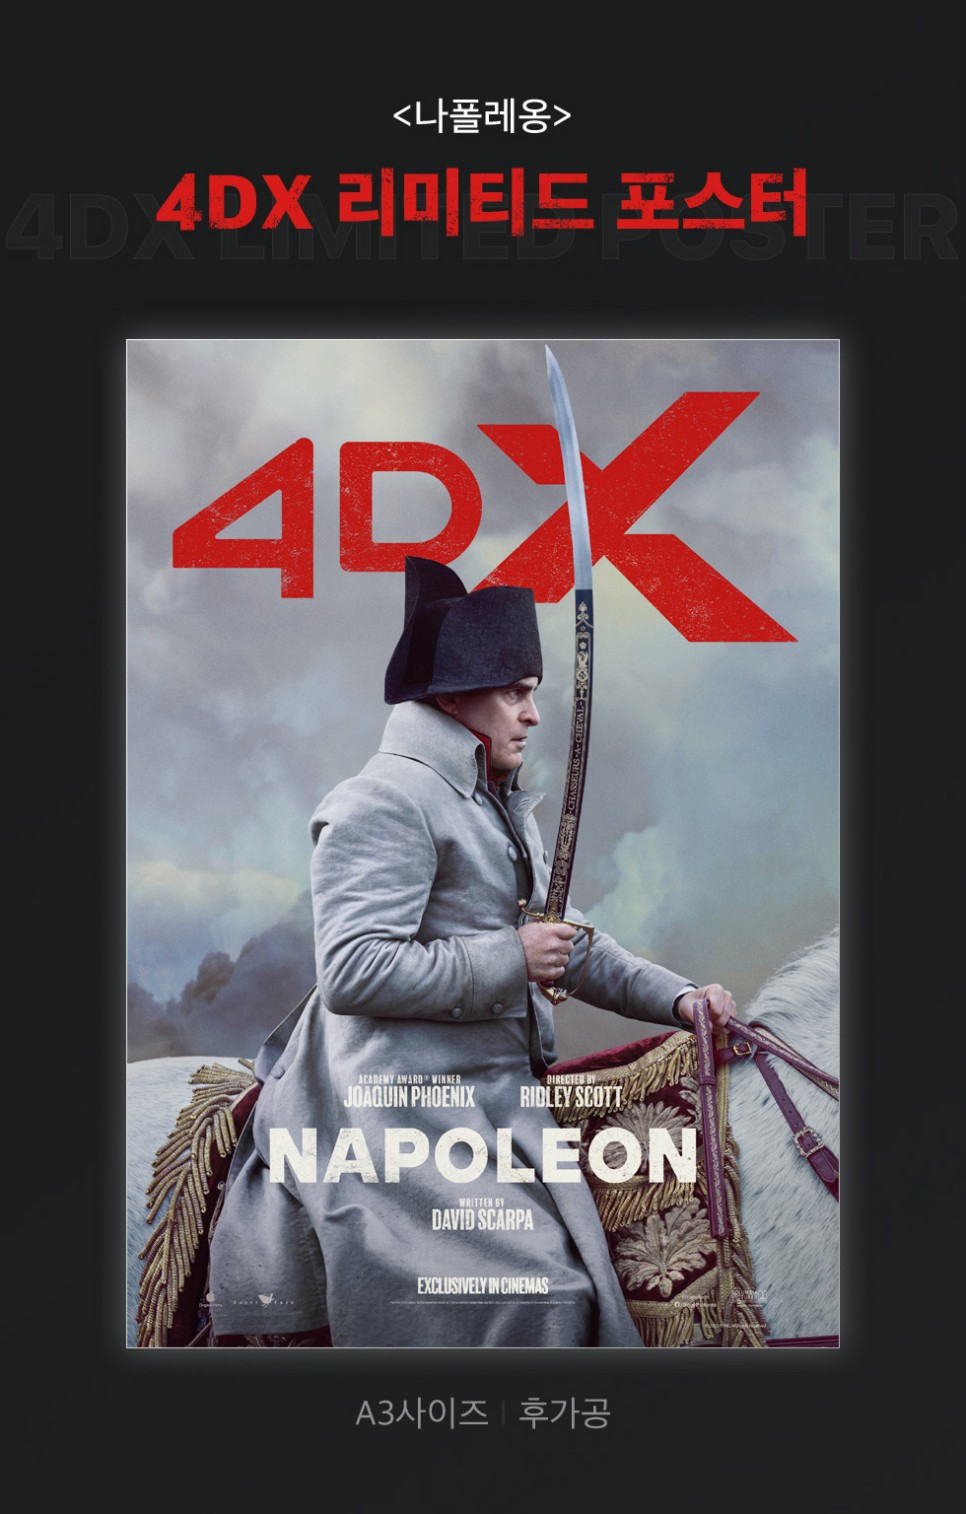 호아킨 피닉스의 나폴레옹 전기 영화 1주차 특전 아이맥스 4DX 돌비 포스터 CGV TTT 아트카드 실물 정보